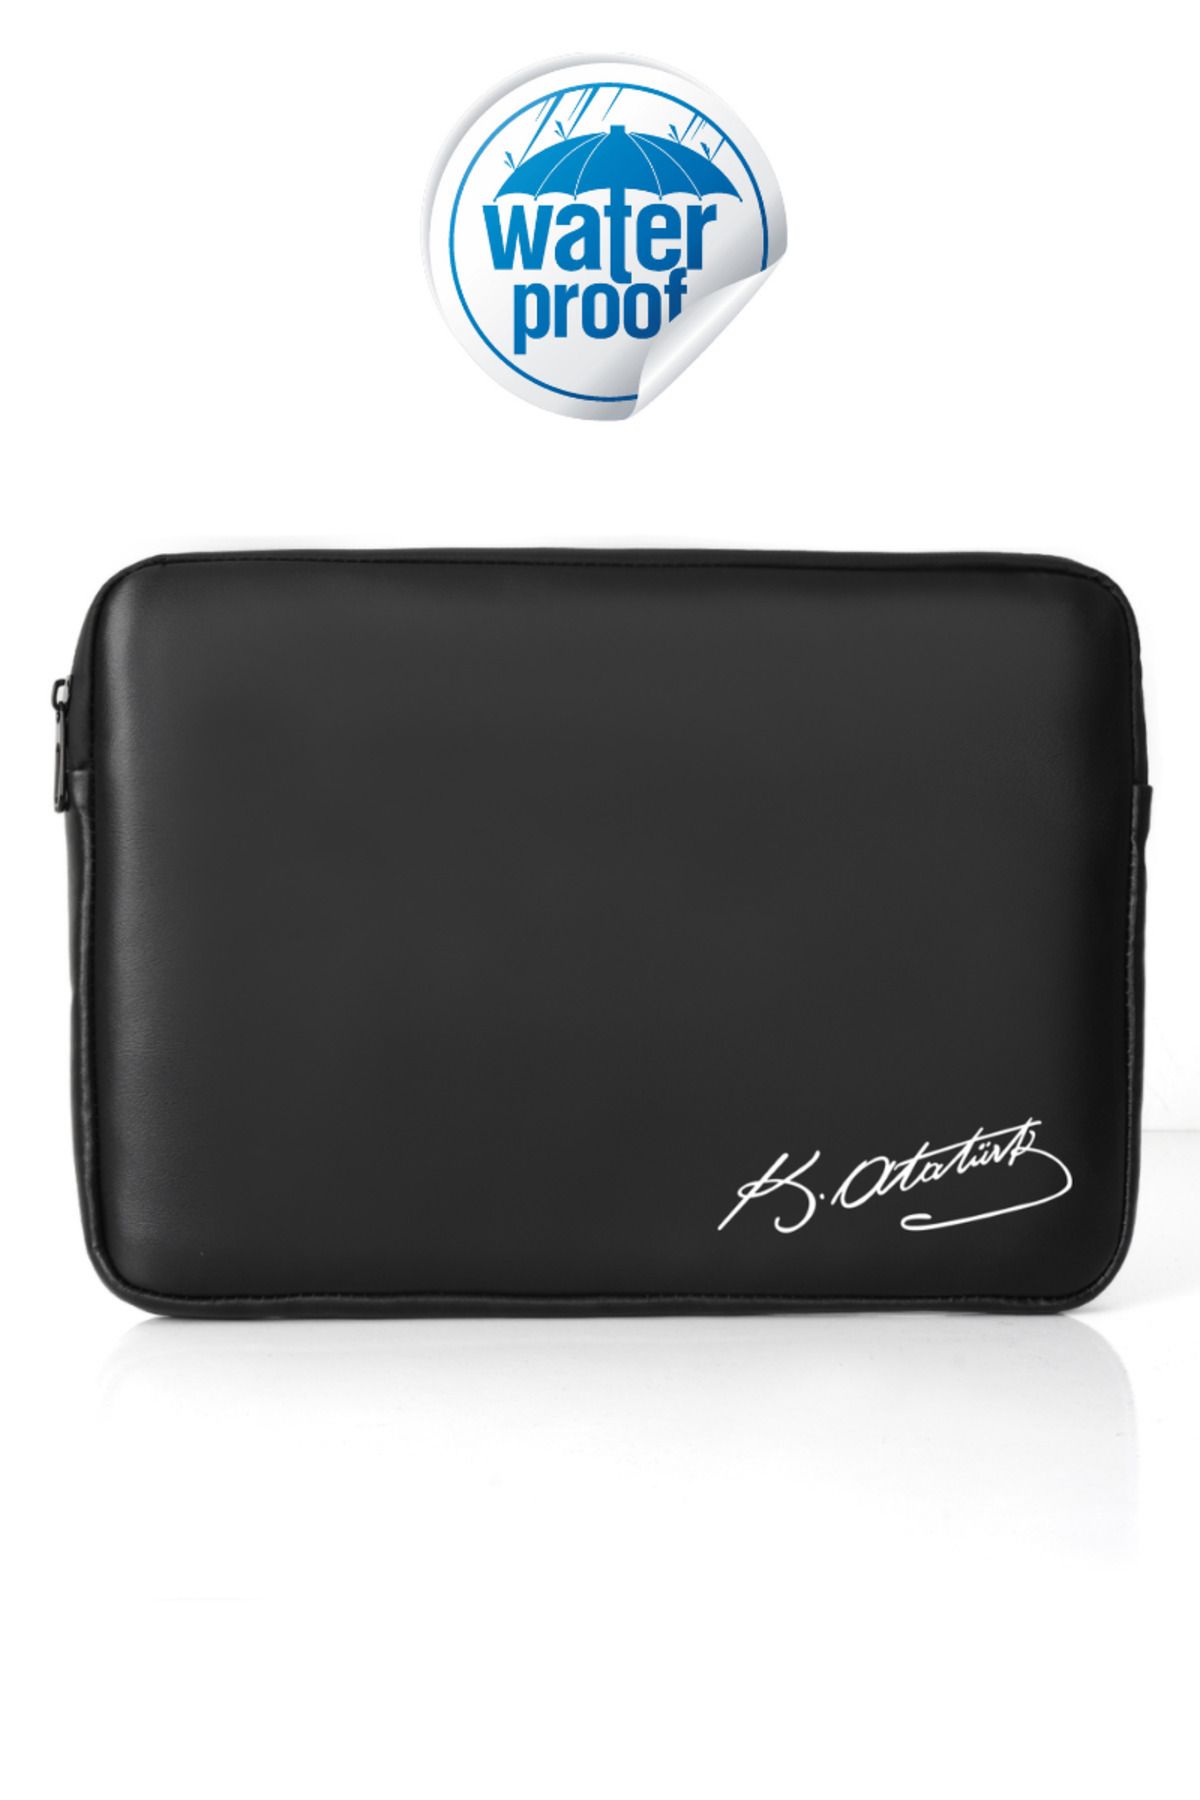 RELIANCE Macbook Air Ve Ultrabook 15.6 inç Uyumlu Su Geçirmez Kumaş Ve Fermuar Özellikli Kılıf